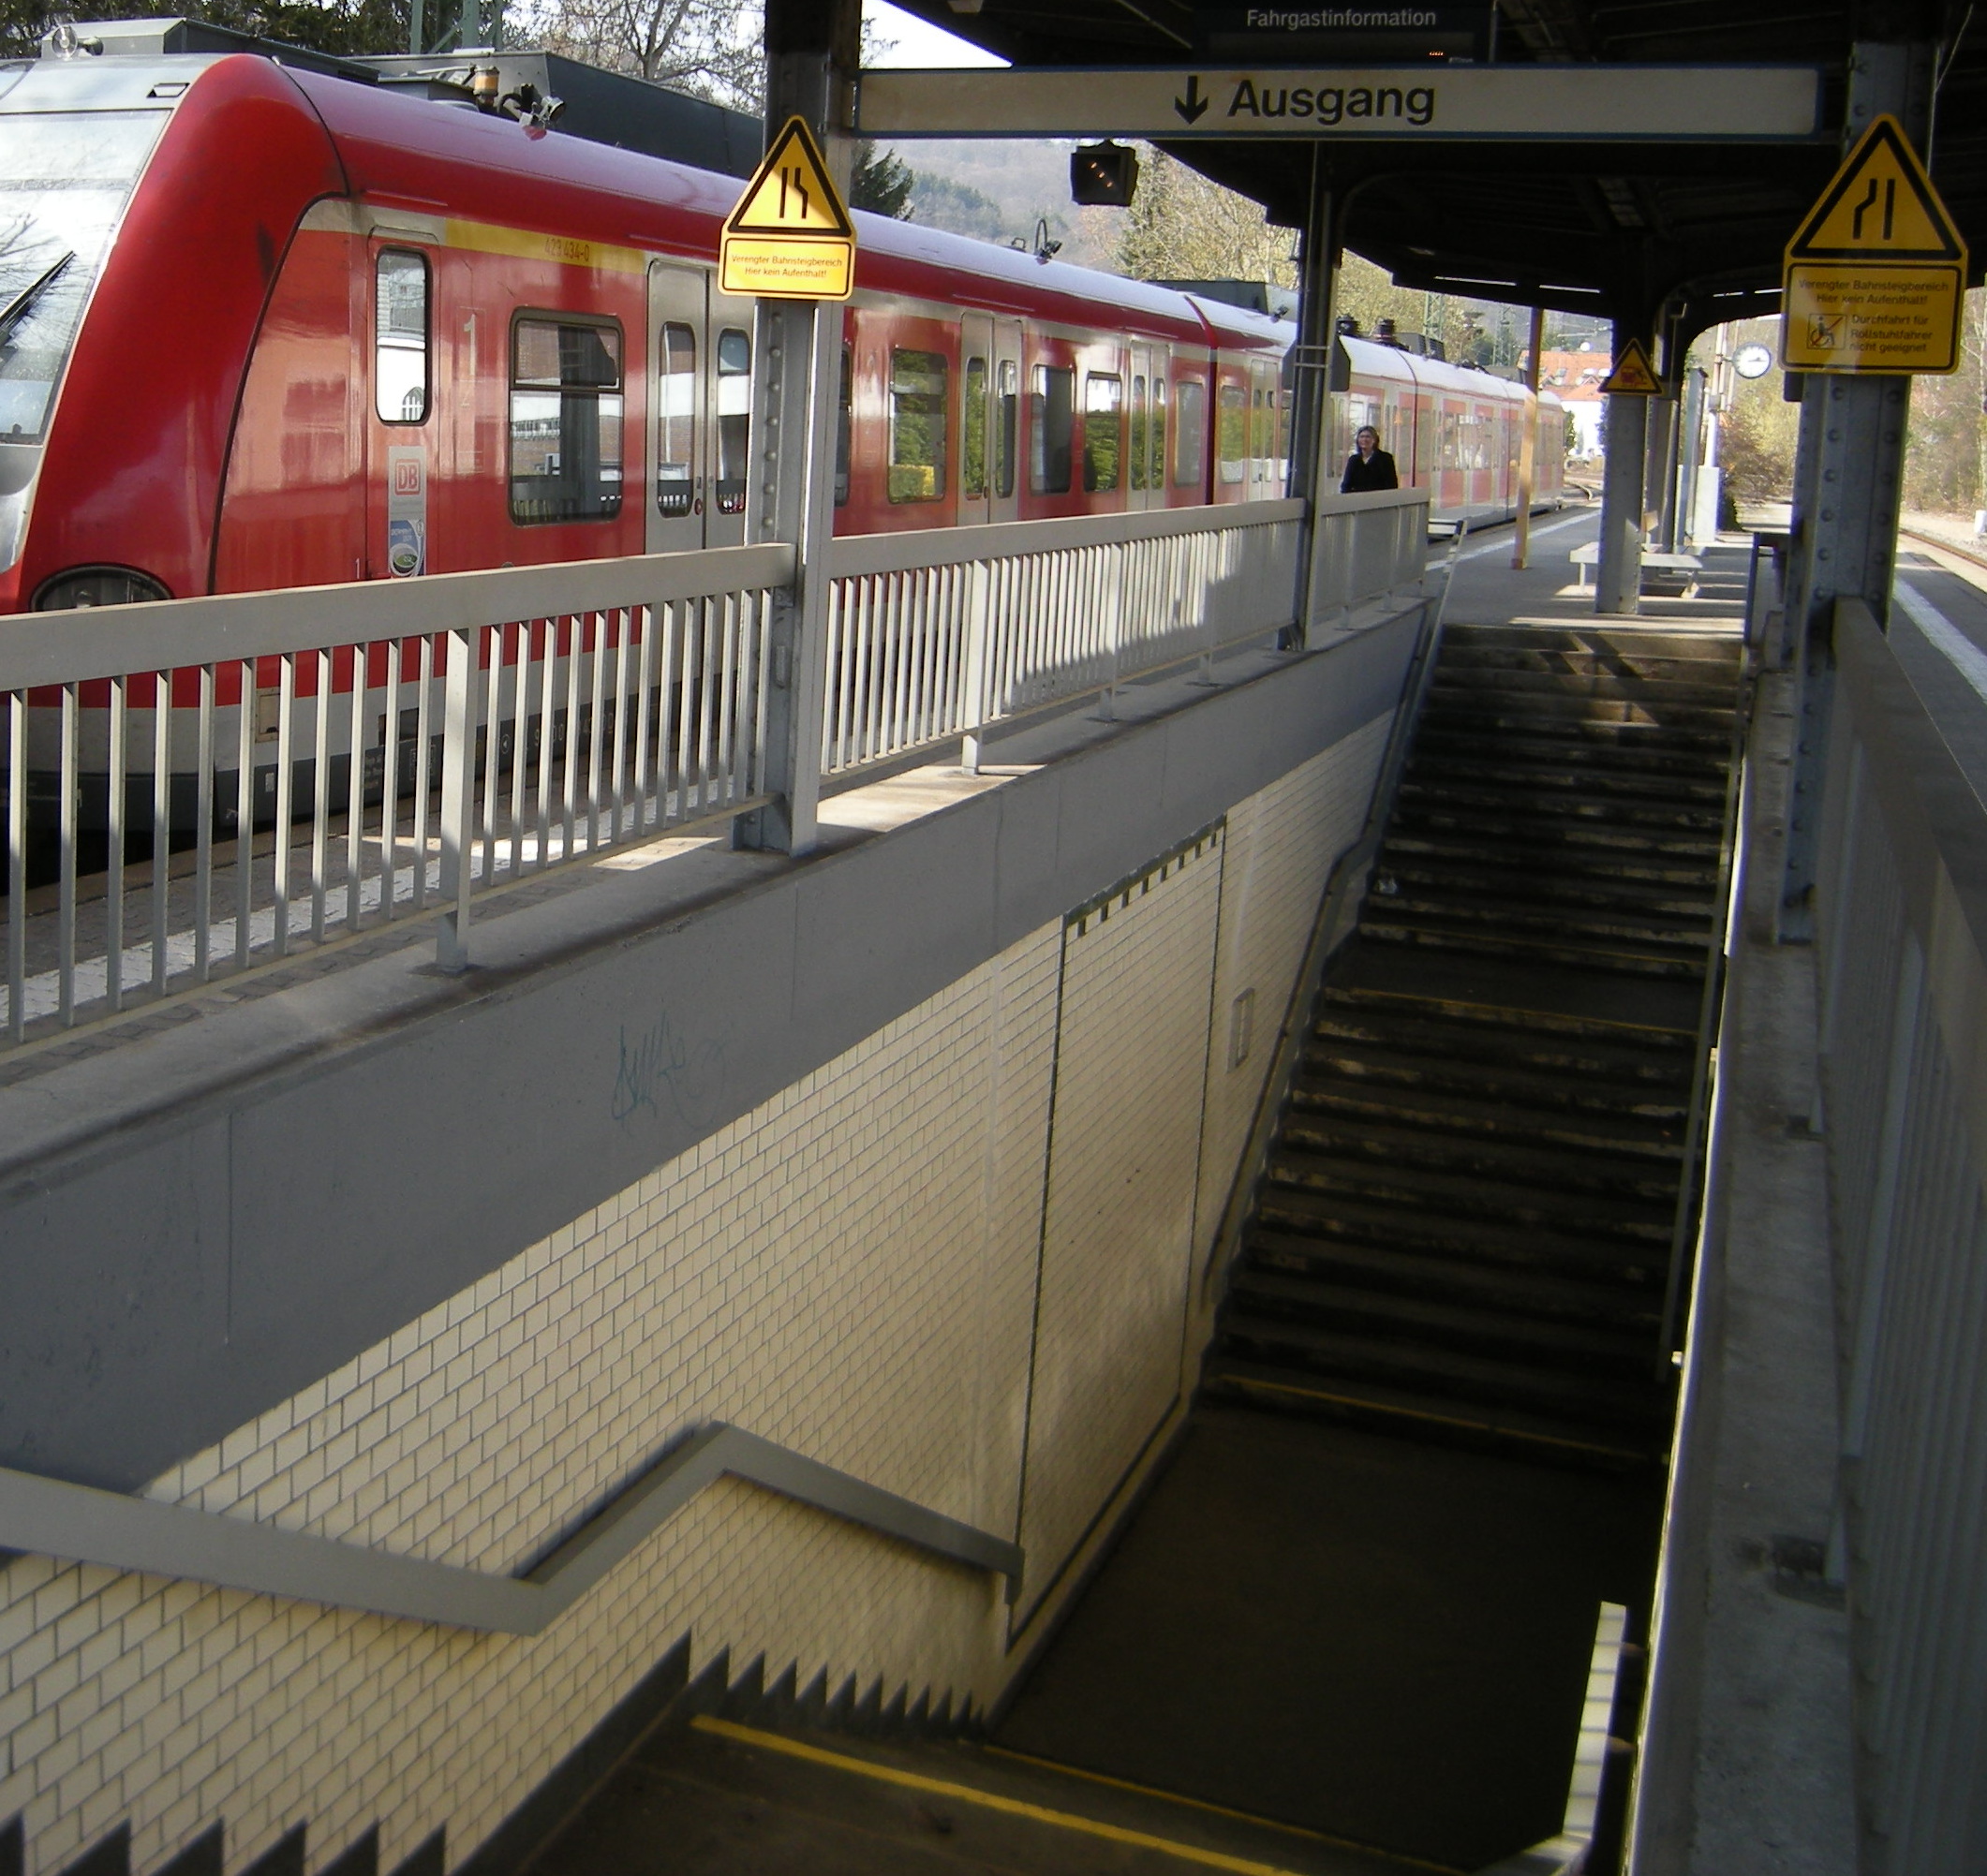 Zu sehen sind die Zugangstreppen zum Bahnhof Lorsbach, Teile des Bahnsteigs und eine S-Bahn in Richtung Frankfurt. Es fehlt ein barrierefreier Zugang zum Mittelsteig.